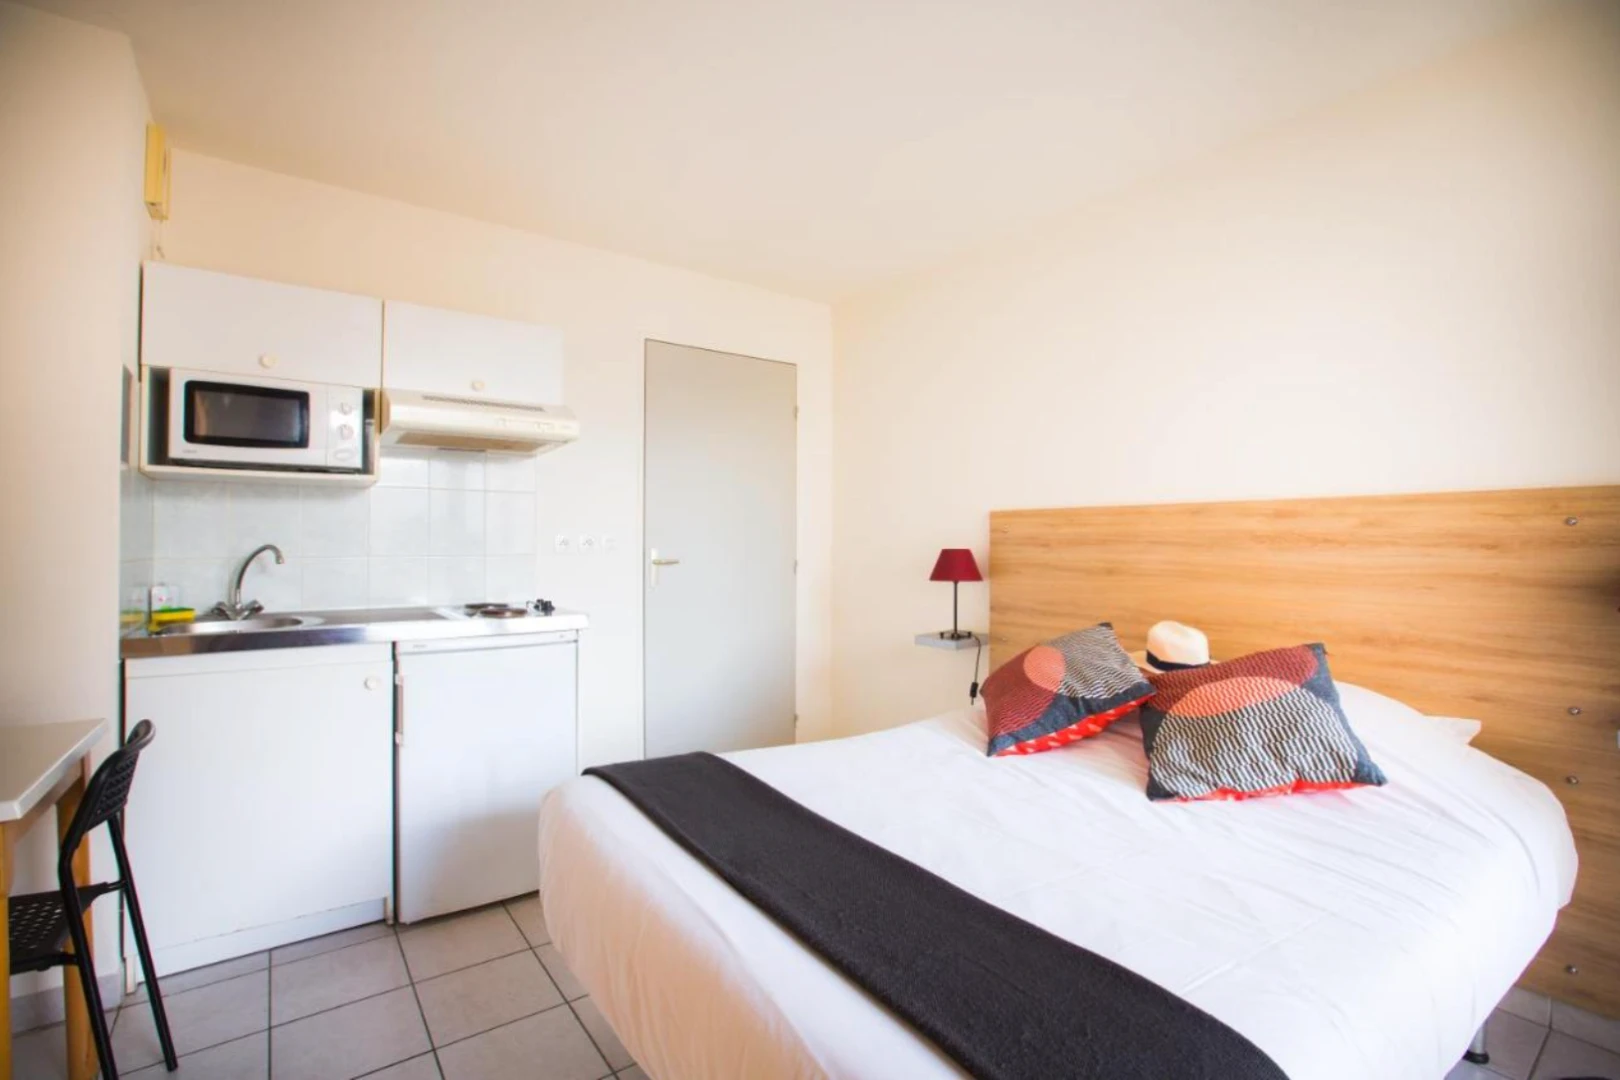 Avignon de çift kişilik yataklı kiralık oda